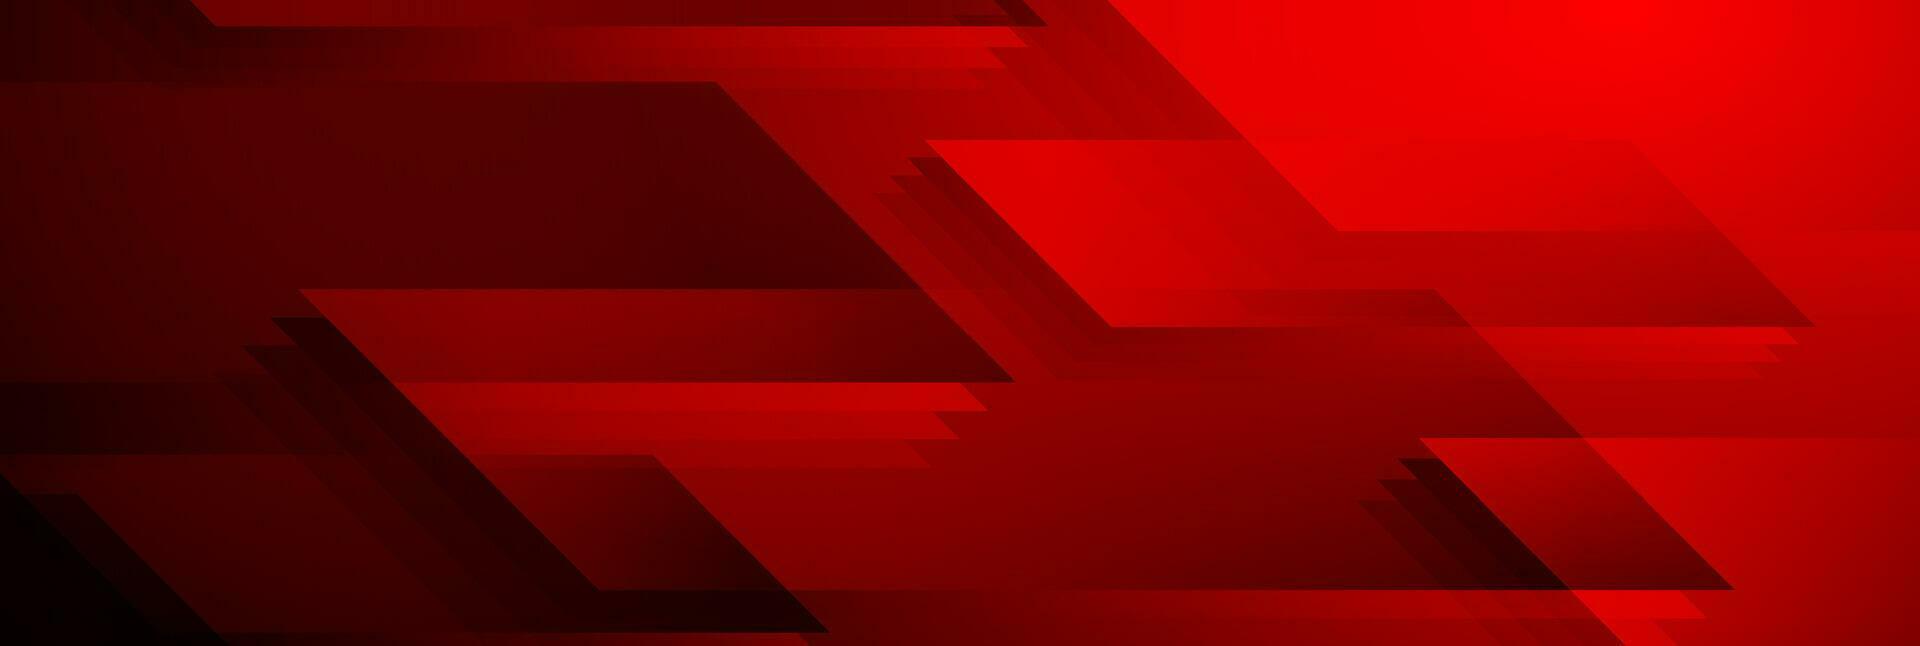 mörk röd skinande geometrisk tech abstrakt bakgrund vektor